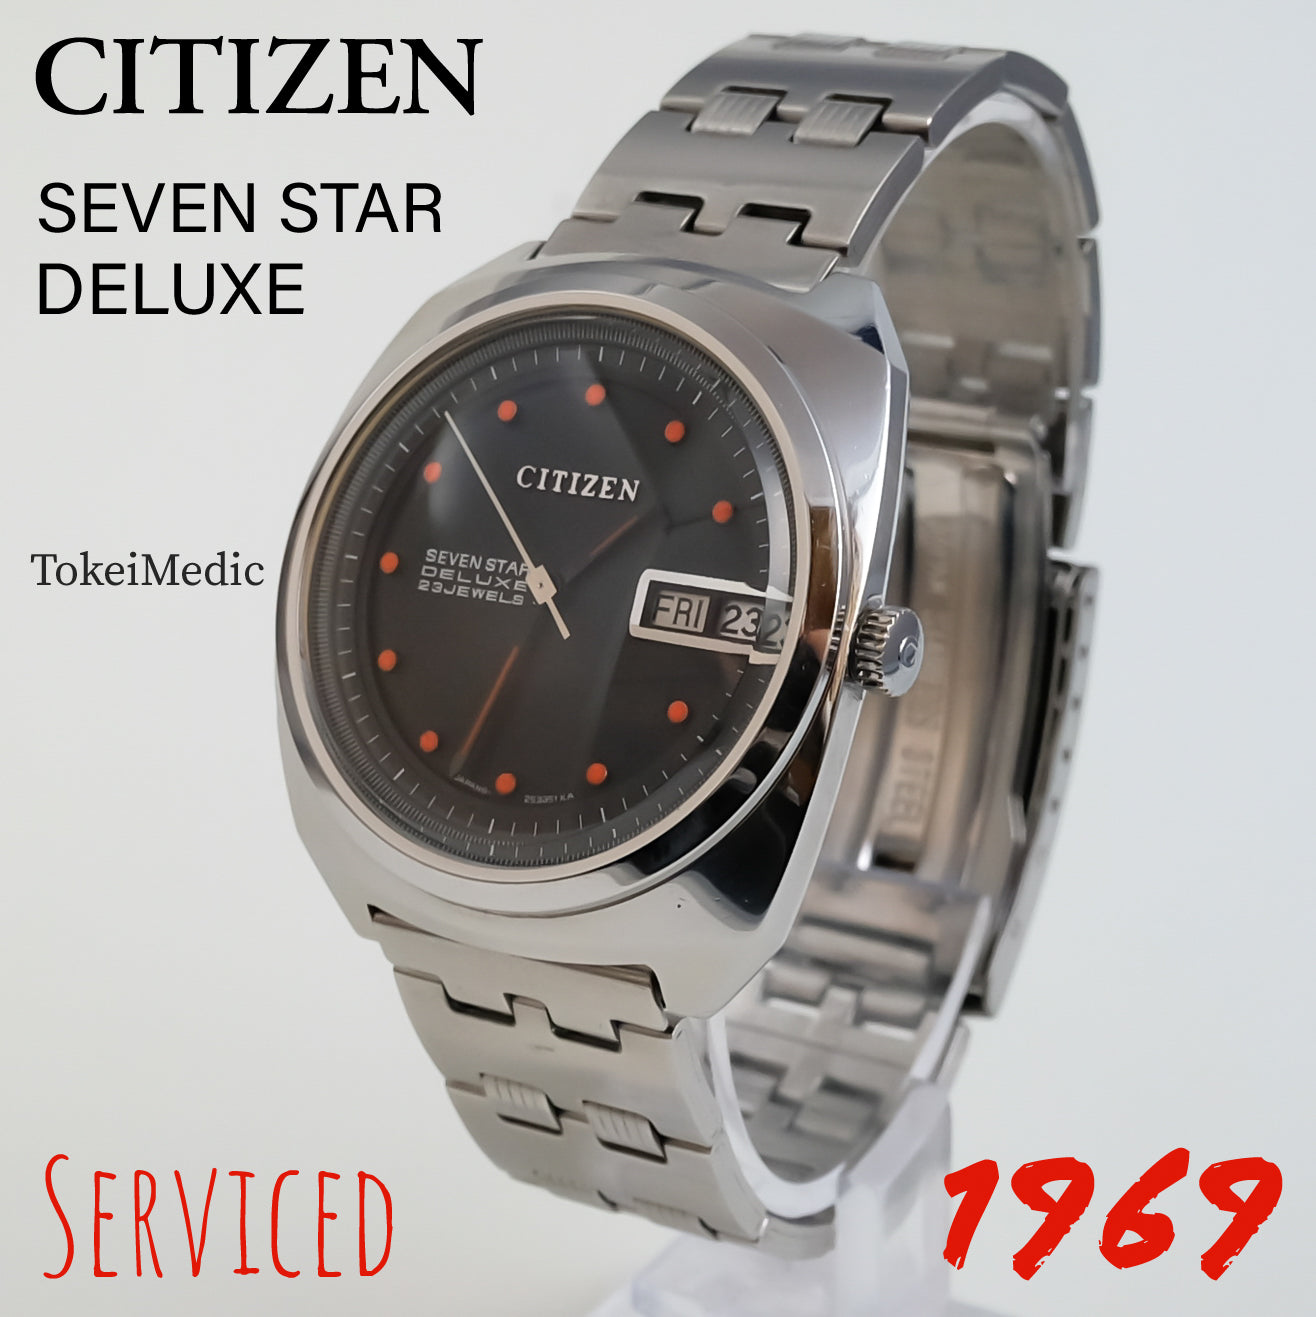 1969 Citizen Seven Star Deluxe 4-520238TA